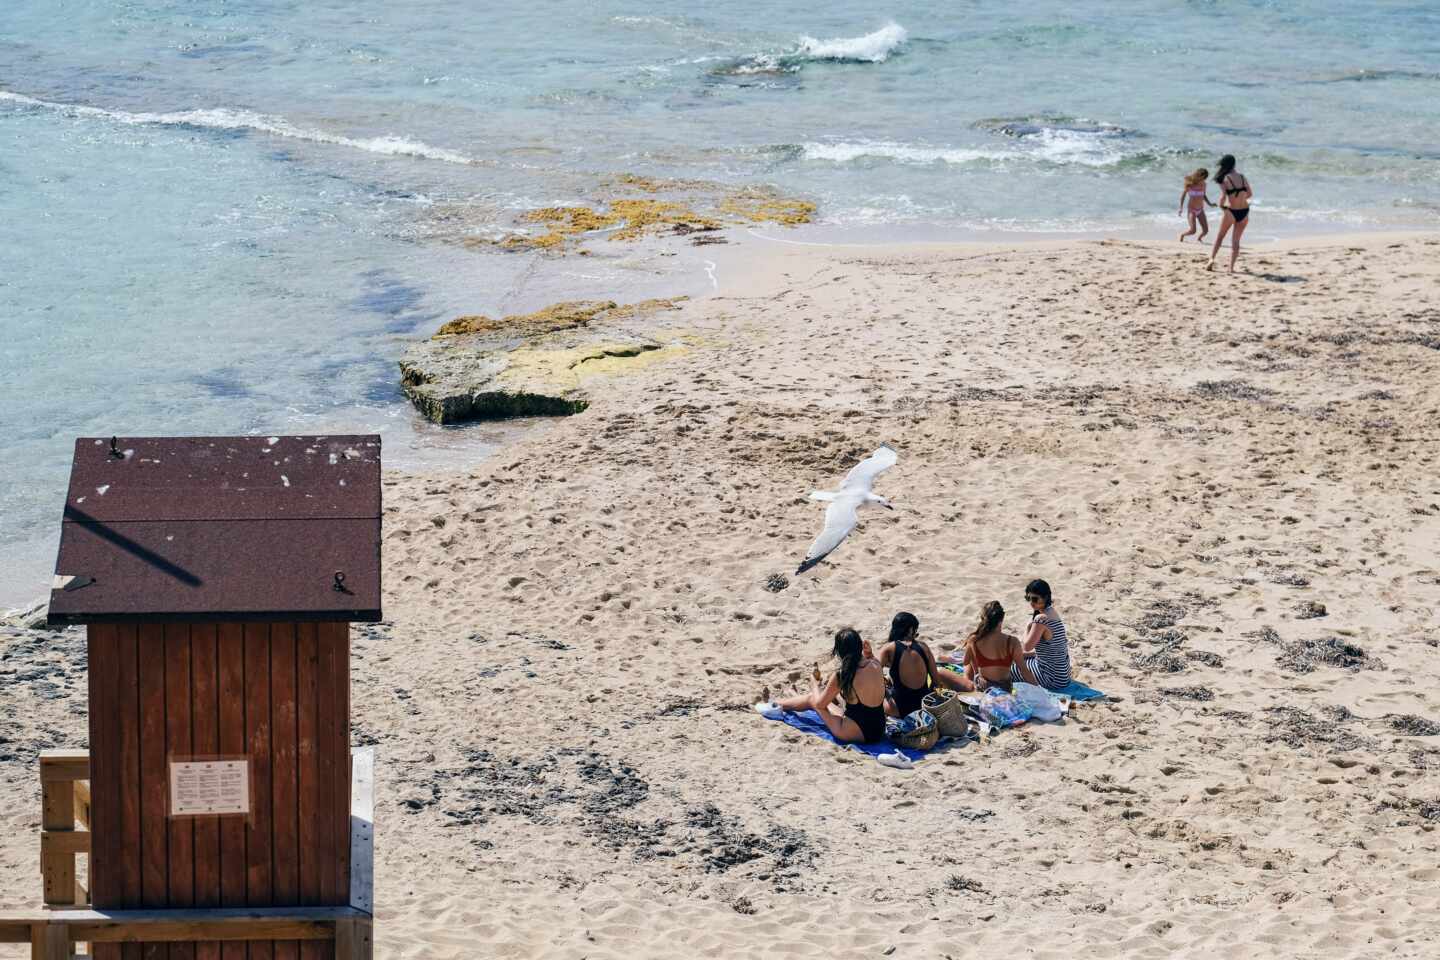 Un hombre muere en un accidente de buceo en Ibiza